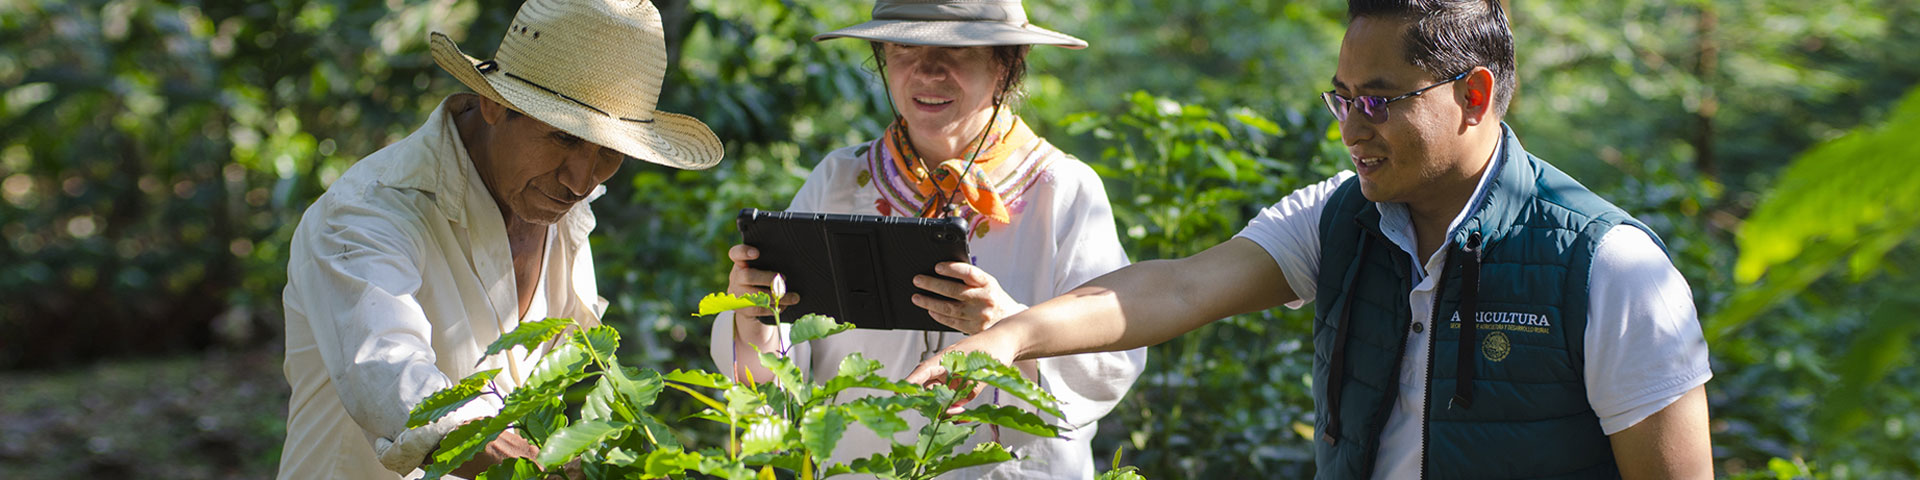 Eine Frau hält ein Tablet in der Hand und schaut sich eine Pflanze an. Rechts und links von ihr stehen zwei Männer, die etwas zur Pflanze erklären.